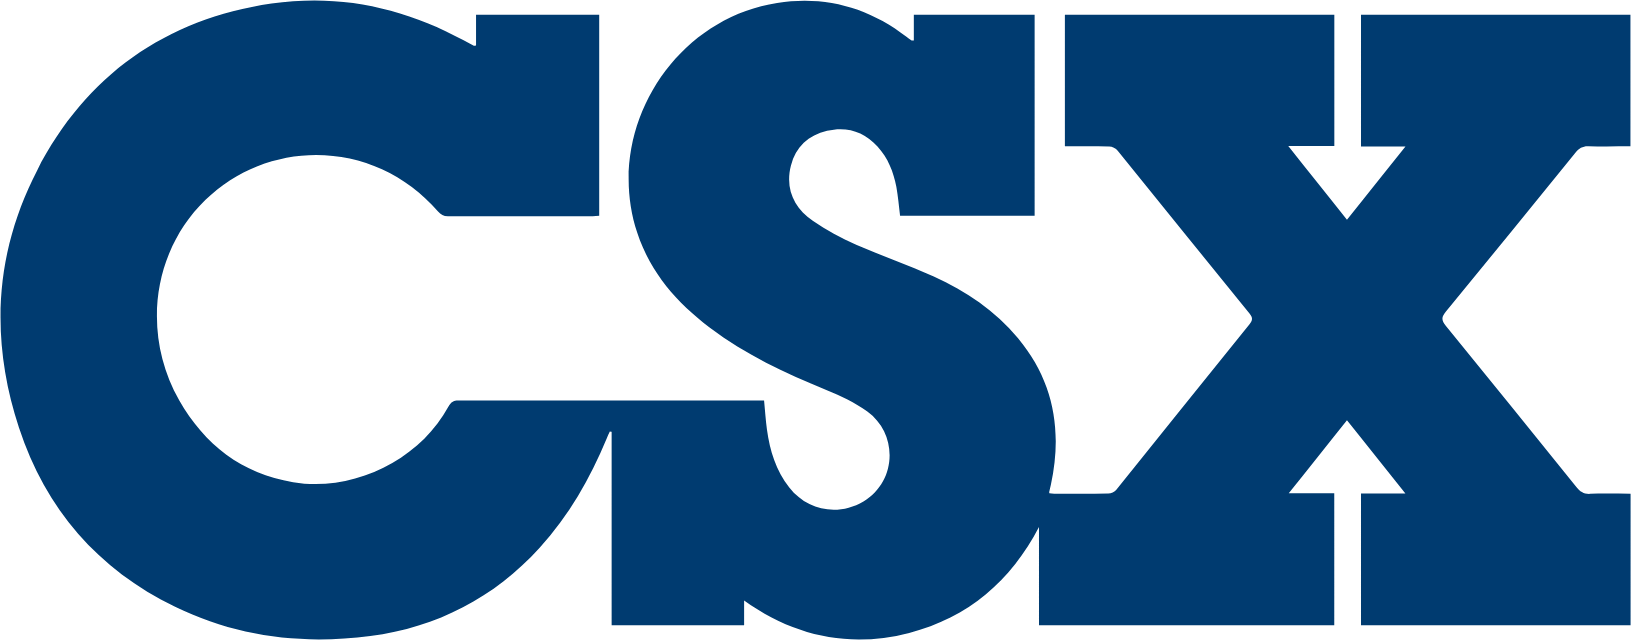 large blue CSX letters